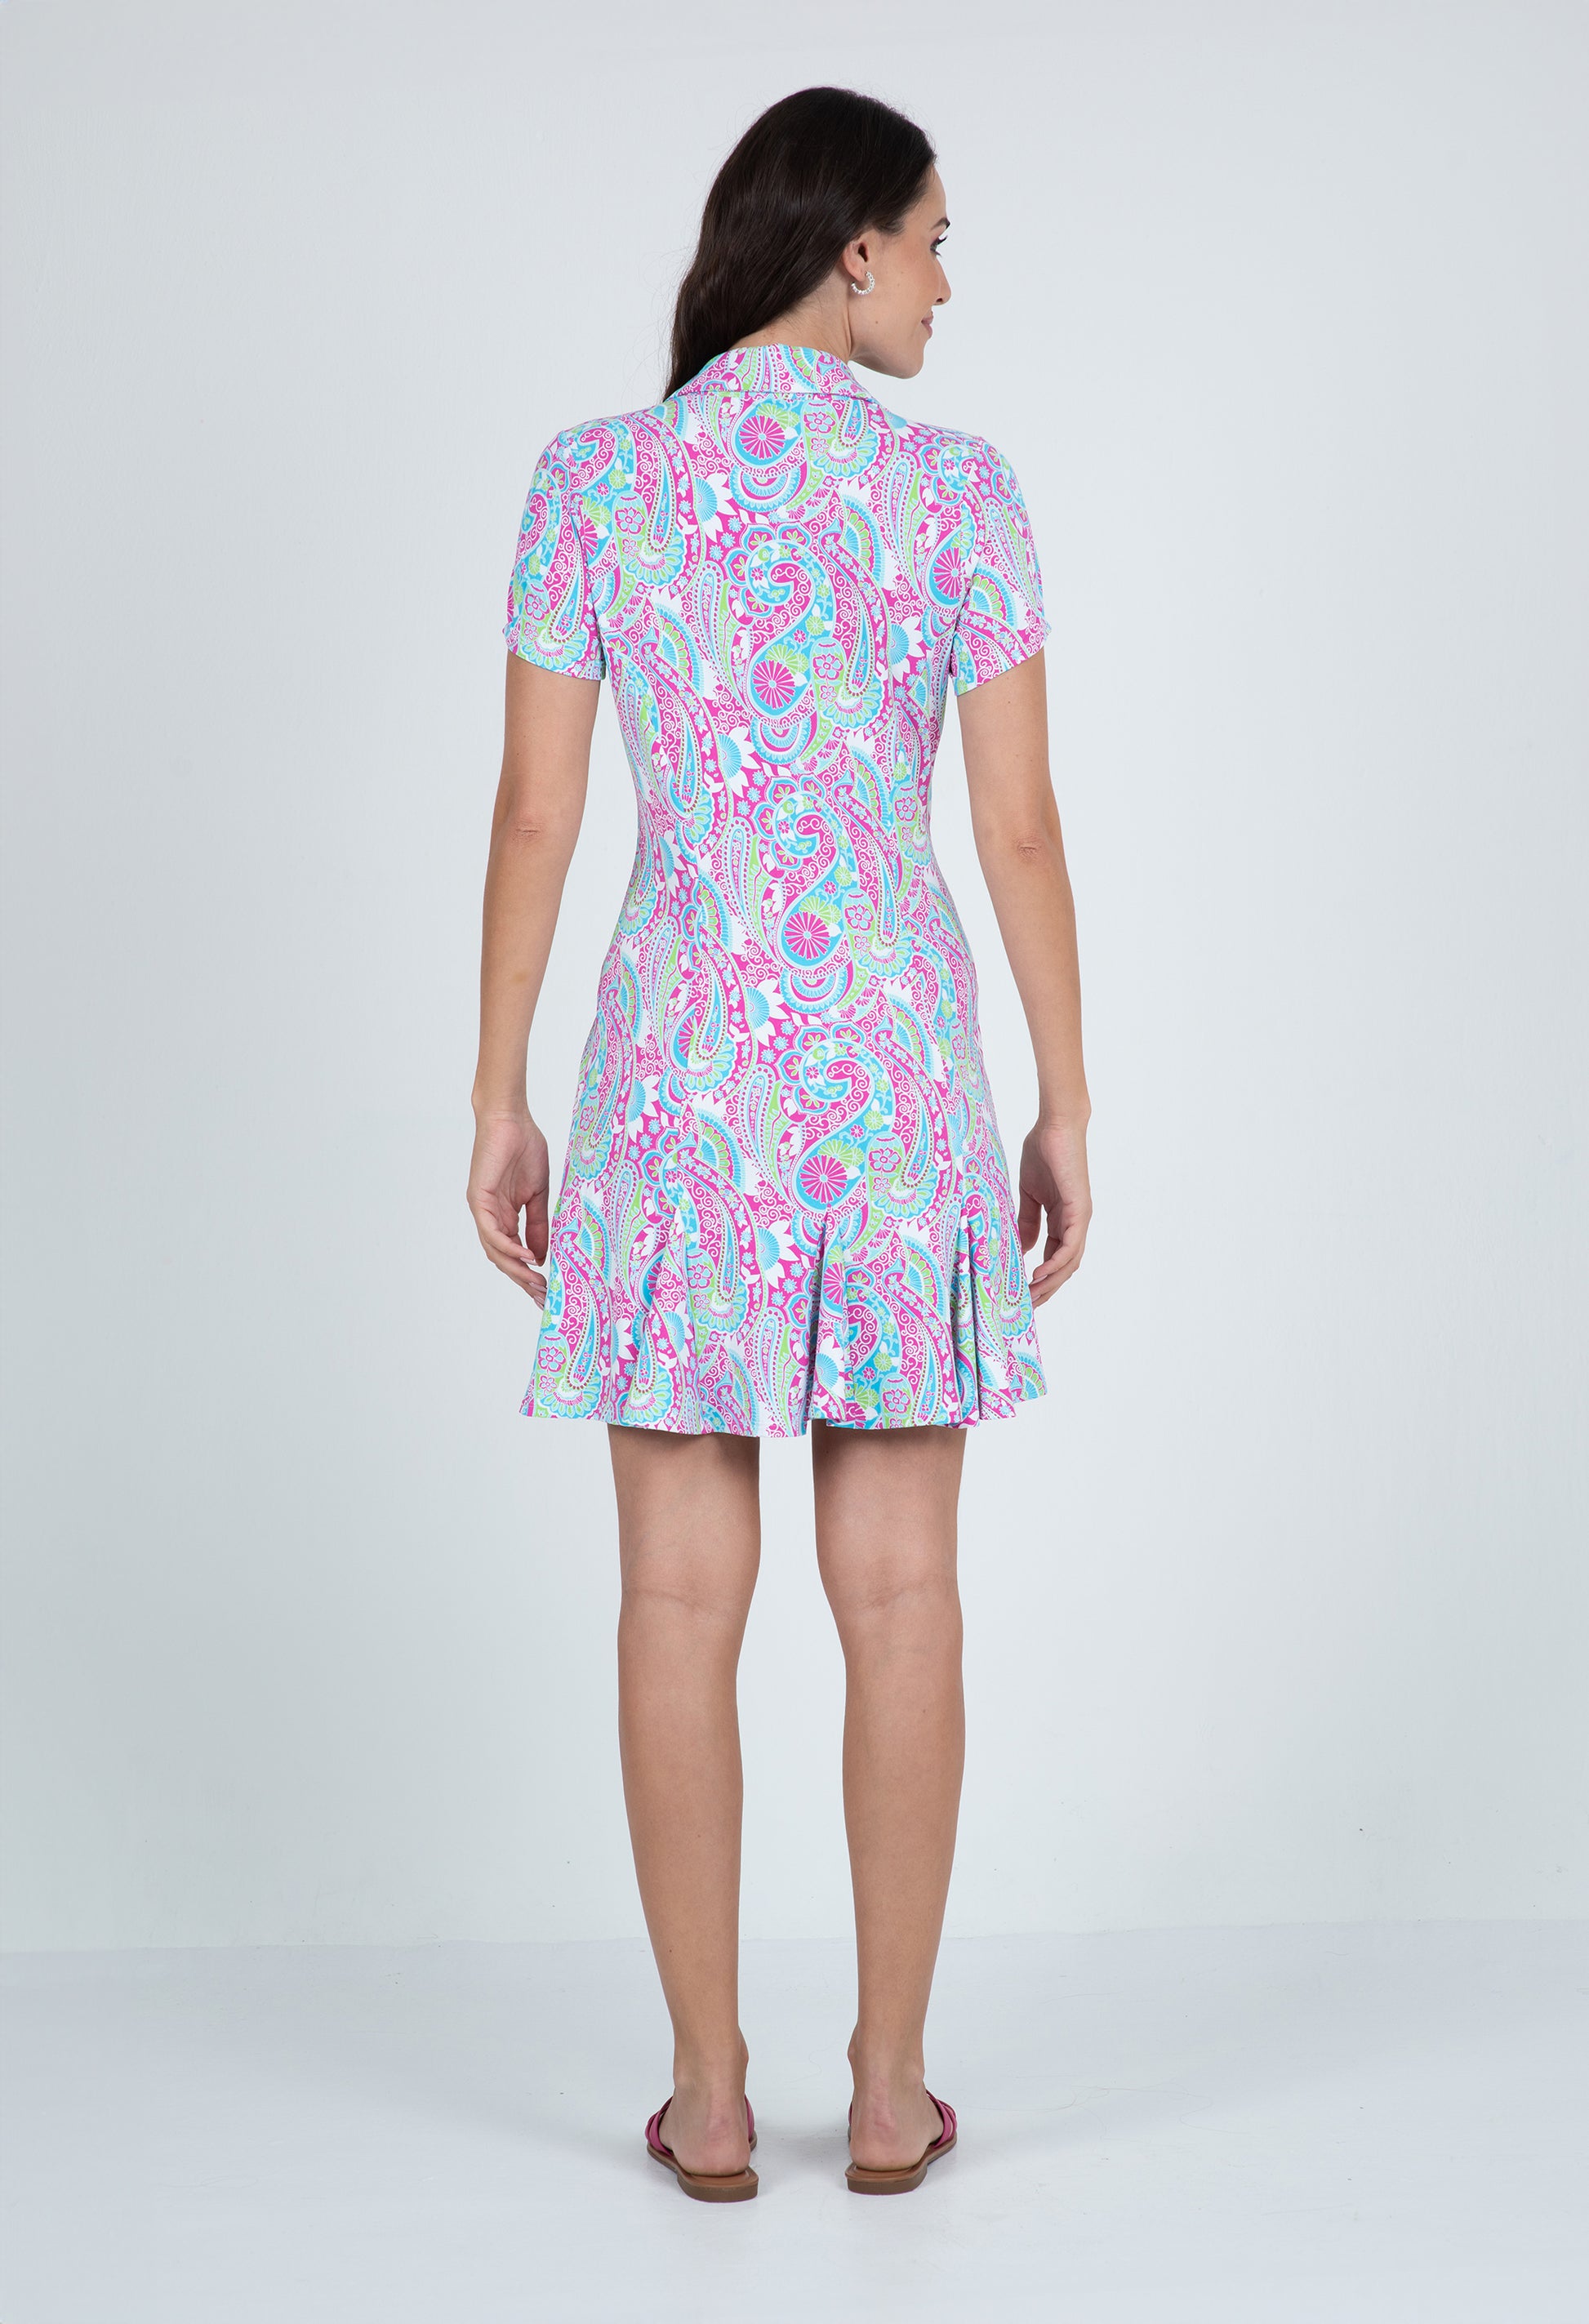 IBKÜL - Gloria Print Short Sleeve Godet Dress – 69869 - Color: Hot Pink/Turquoise